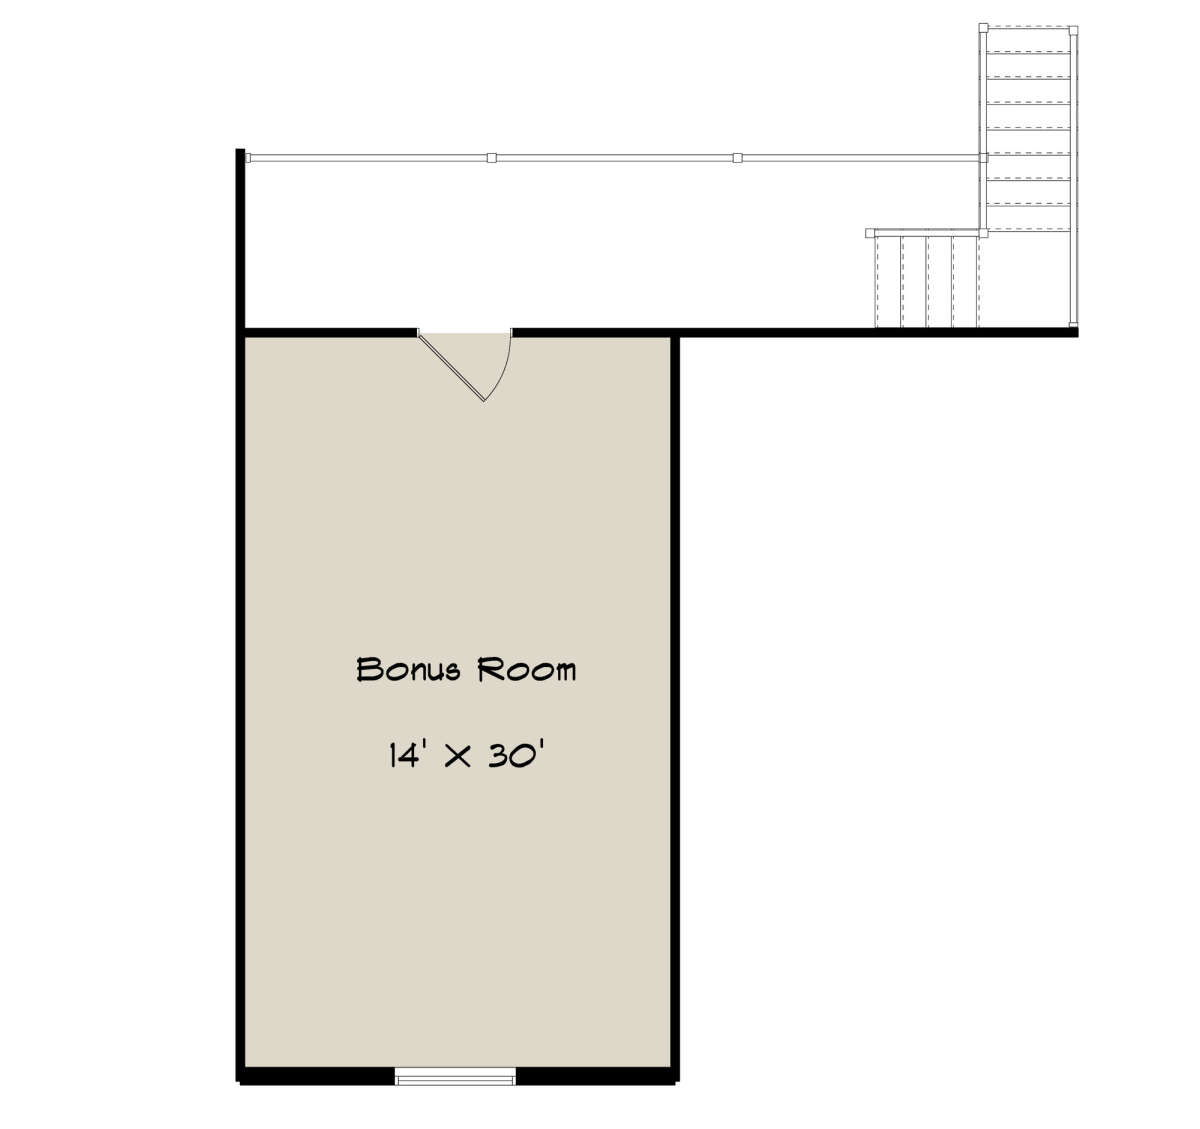 Bonus Room for House Plan #2802-00114